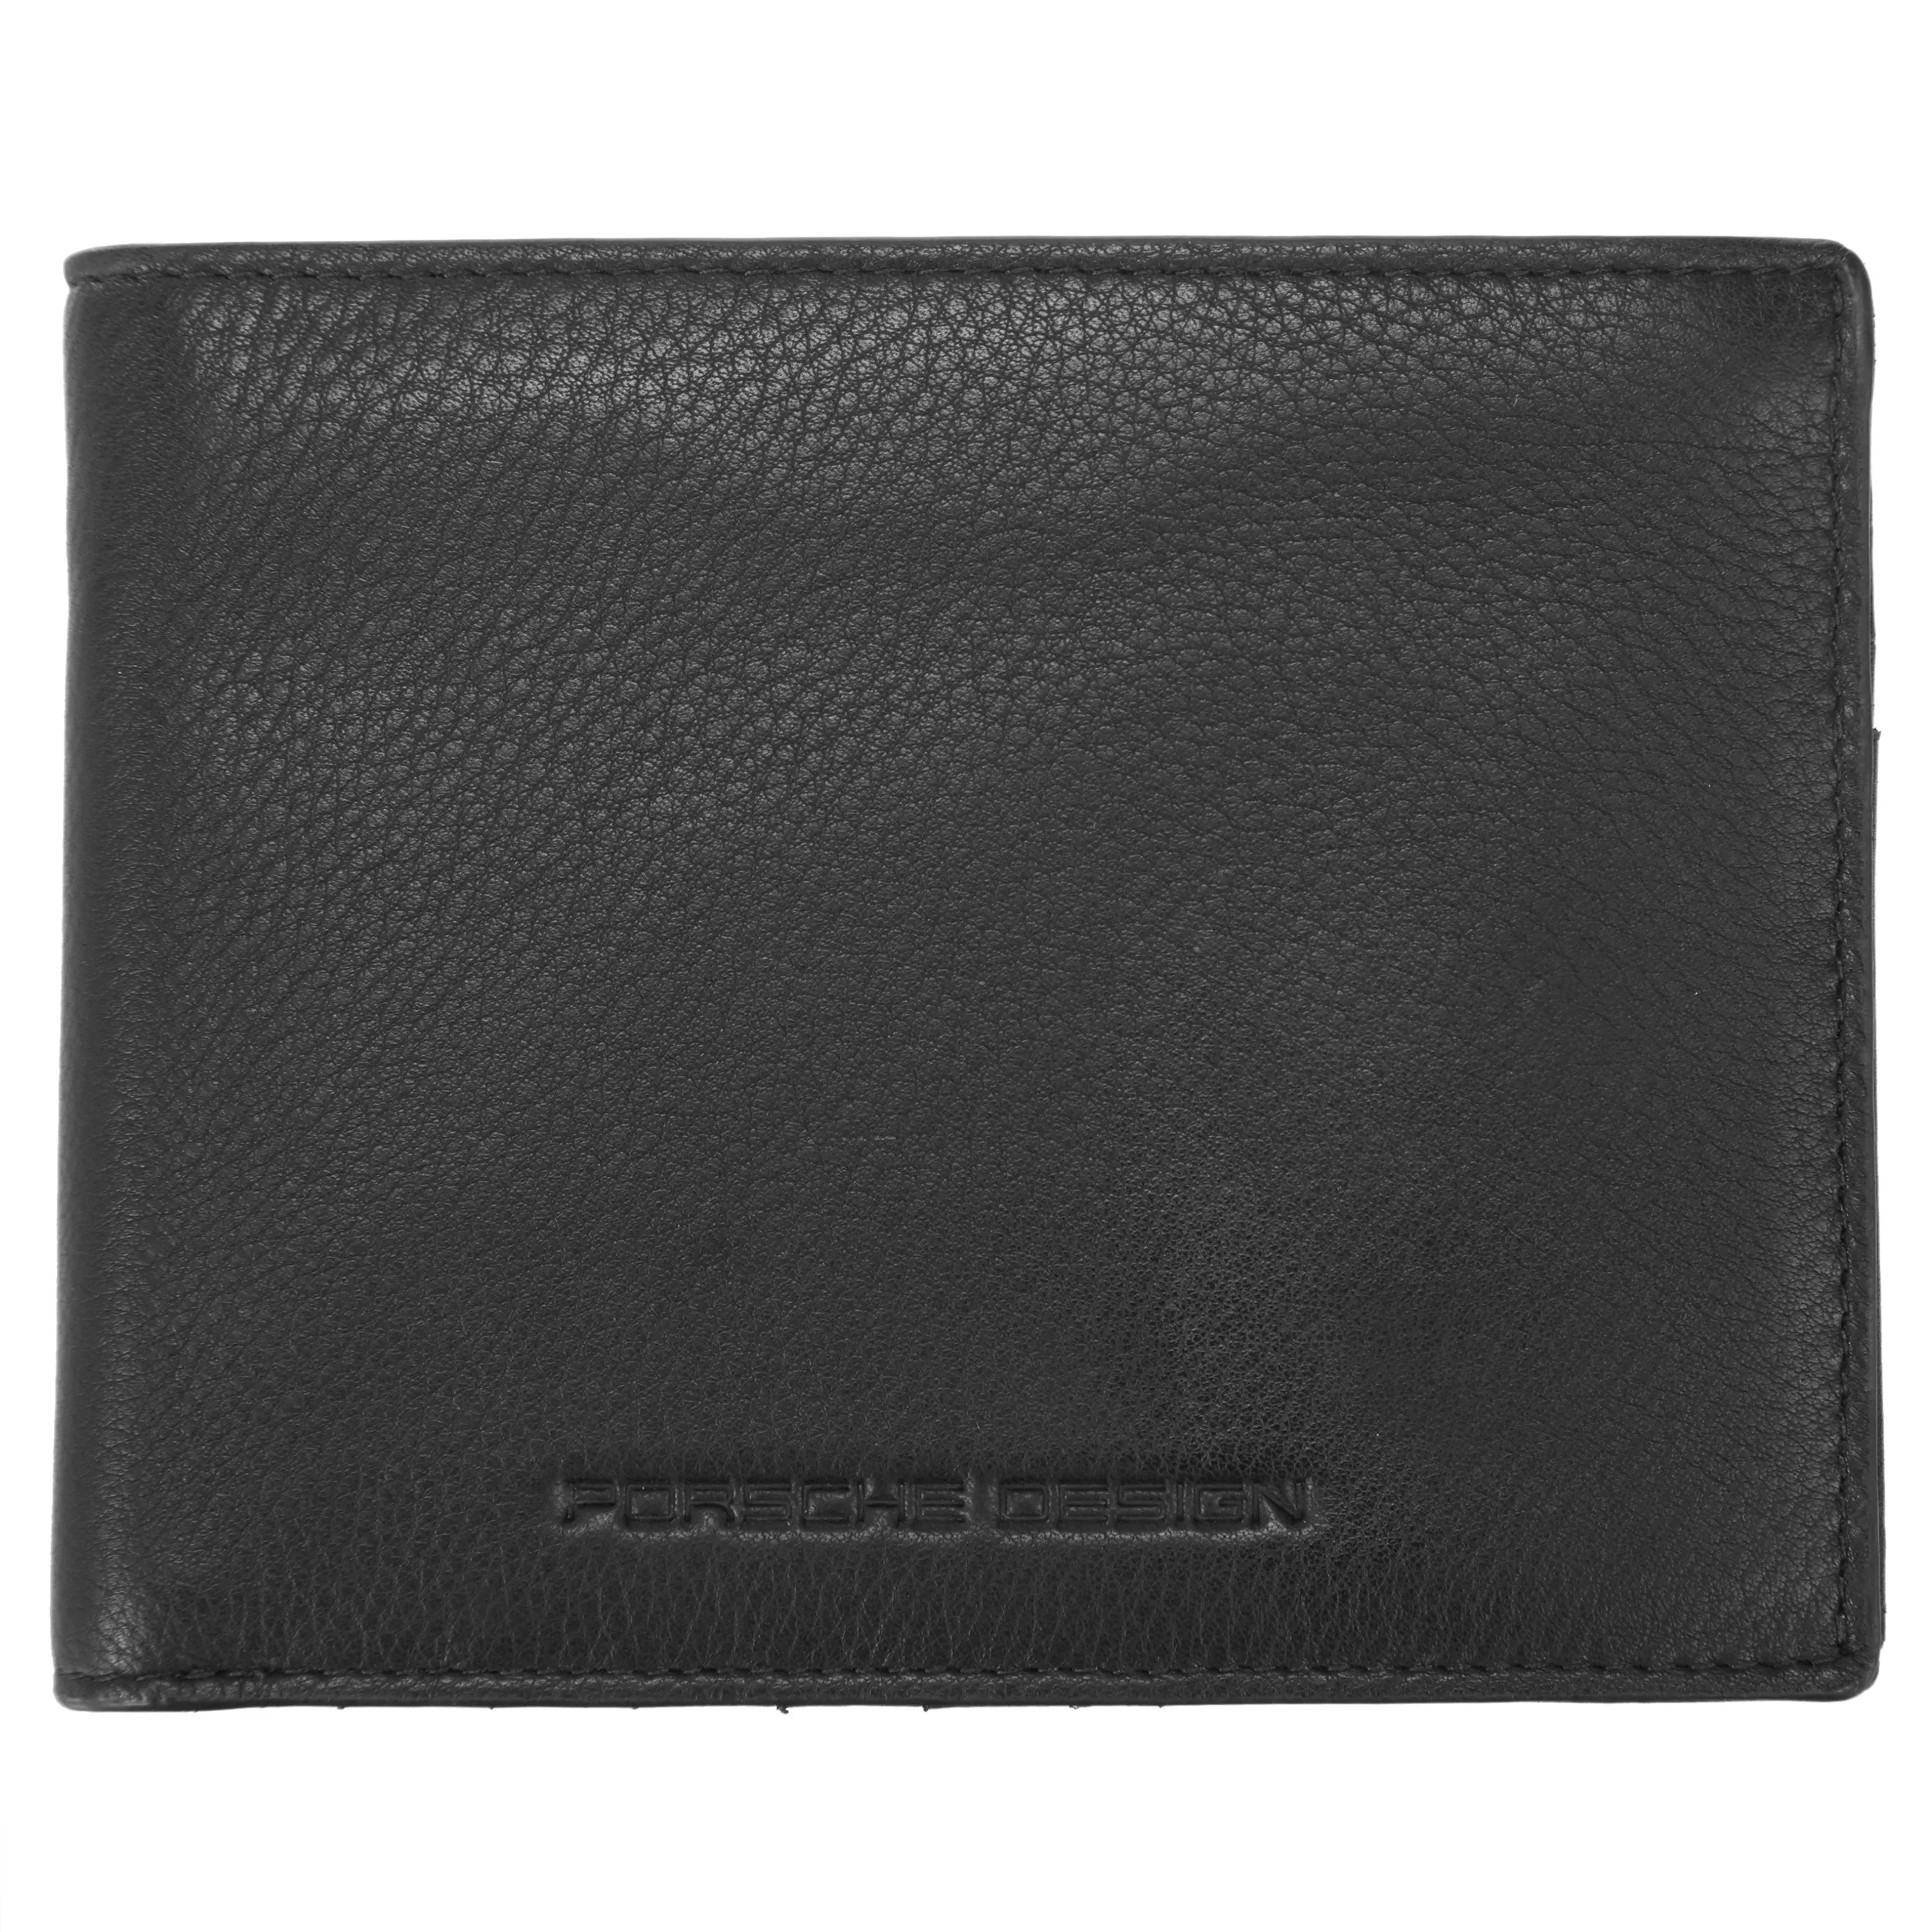 Porsche Design Accessories Business Wallet 10 RFID 12 cm - Black